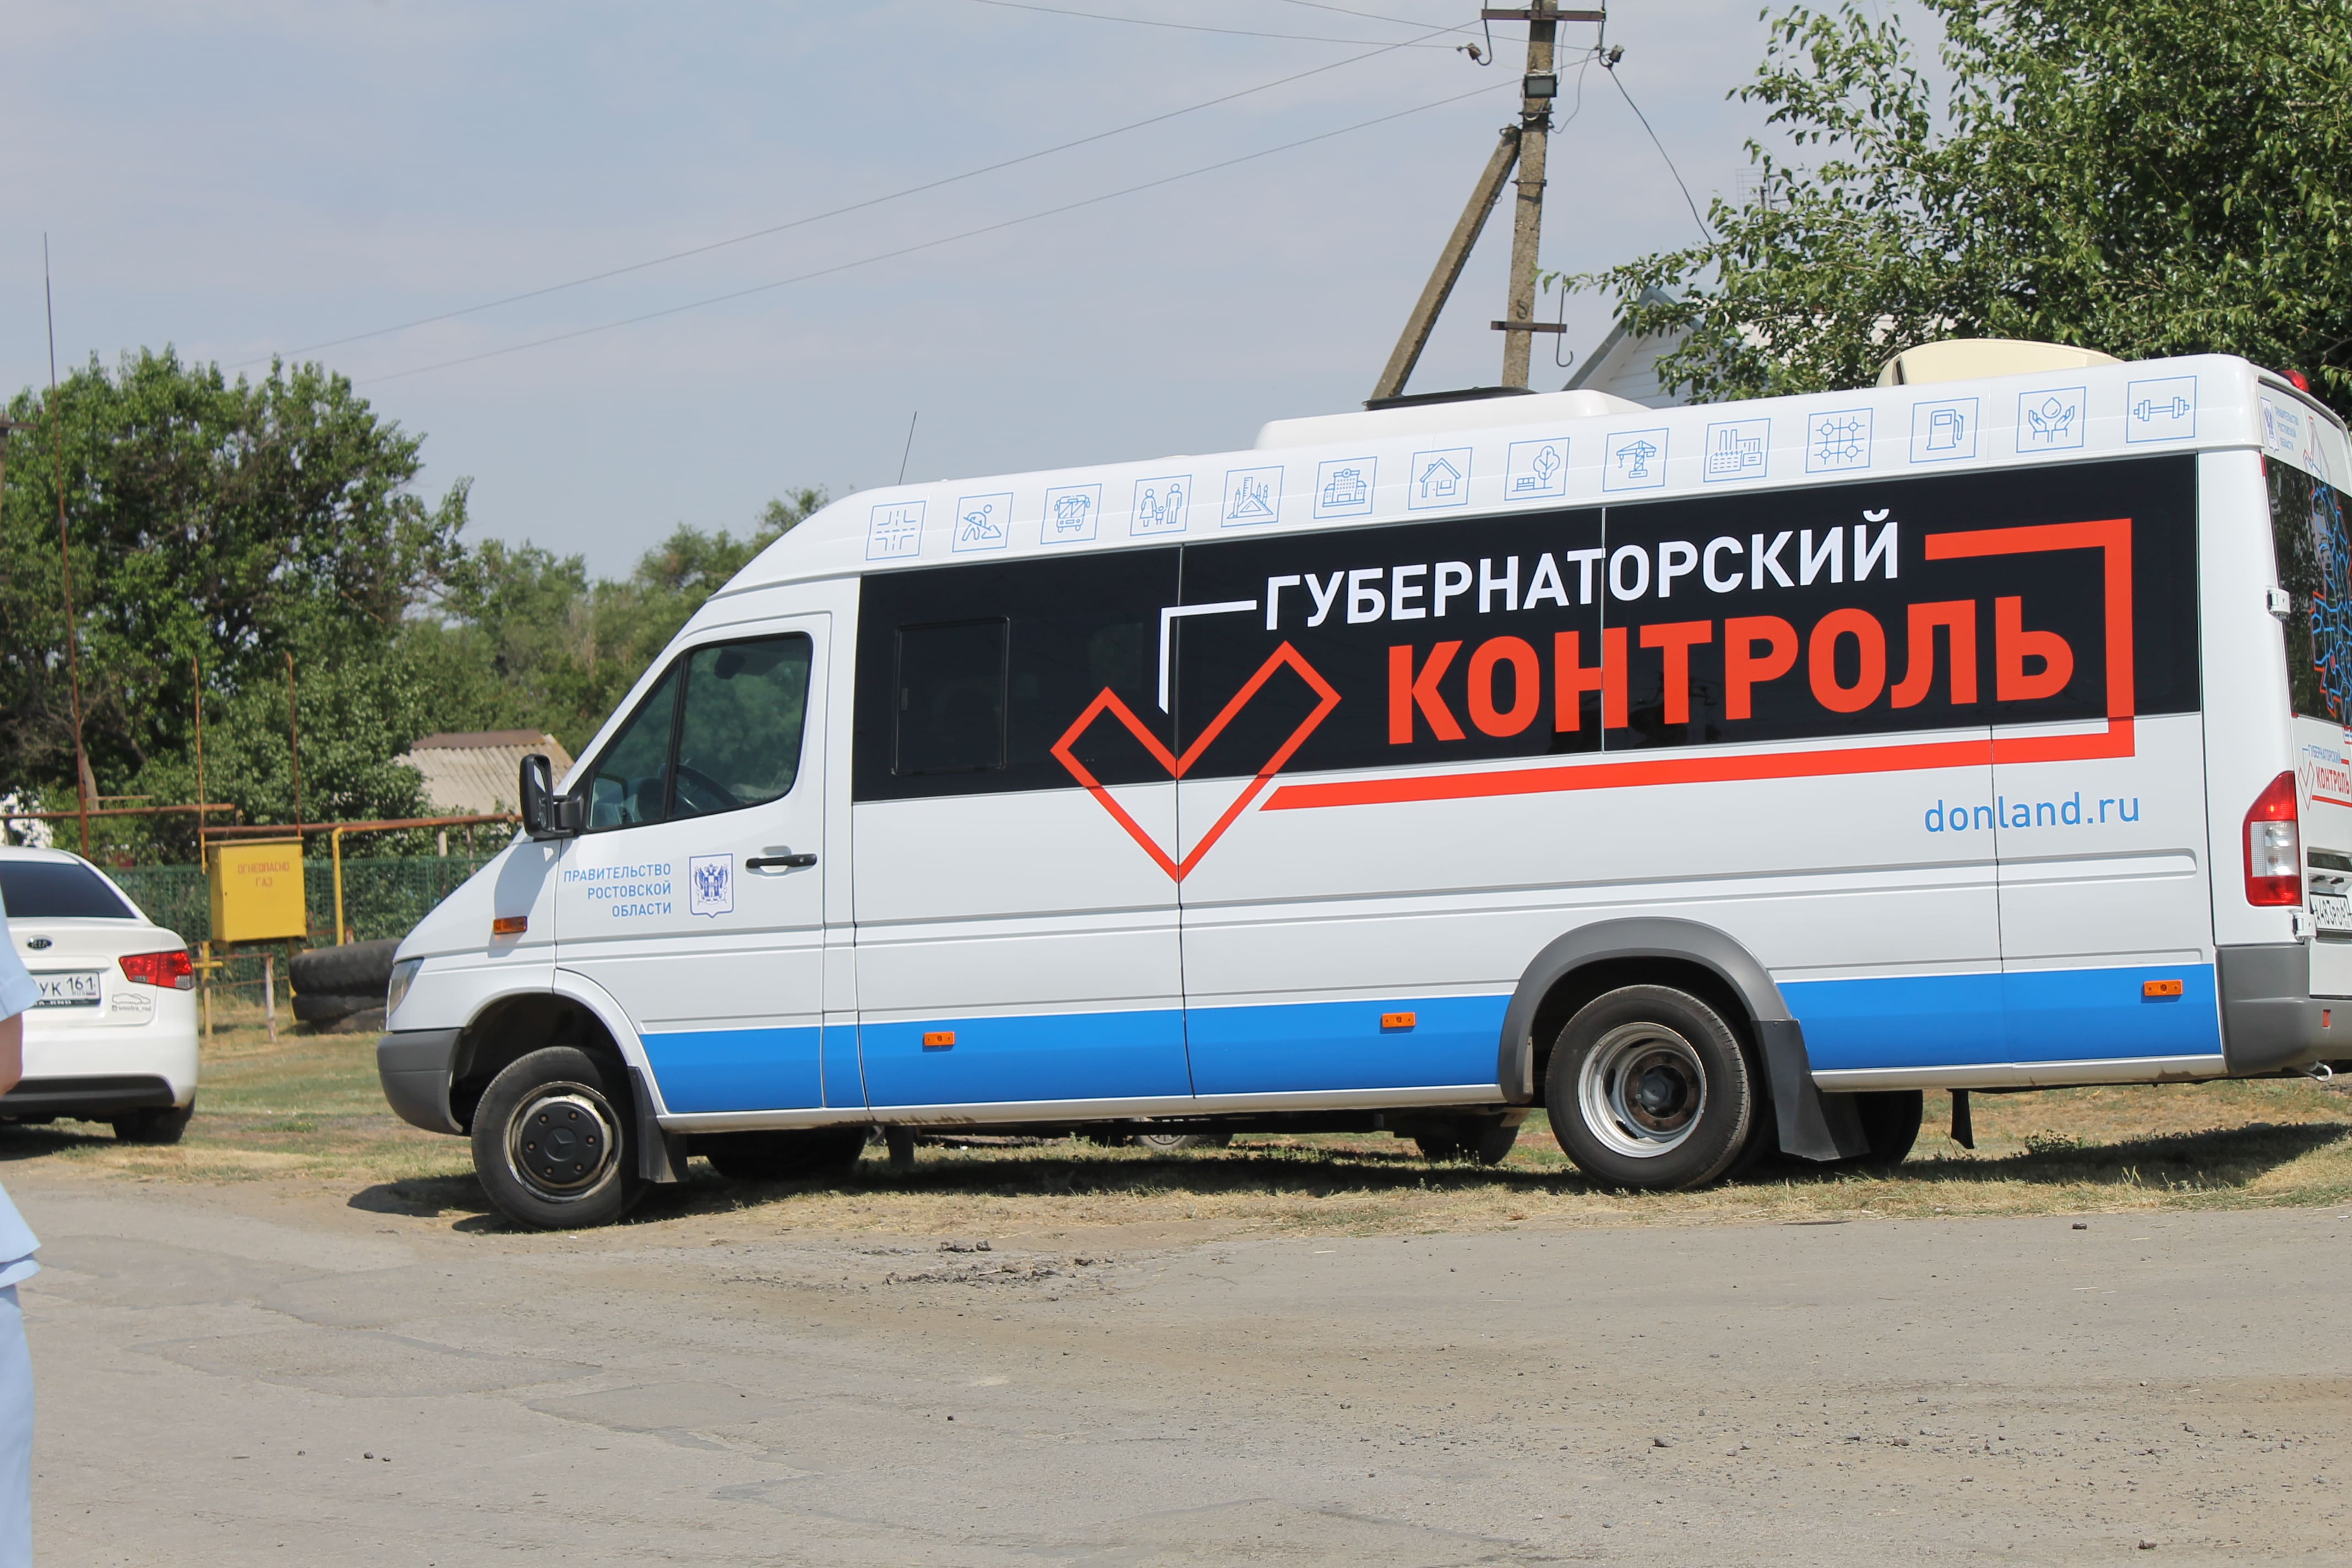 «Губернаторский контроль» в Волгодонском районе